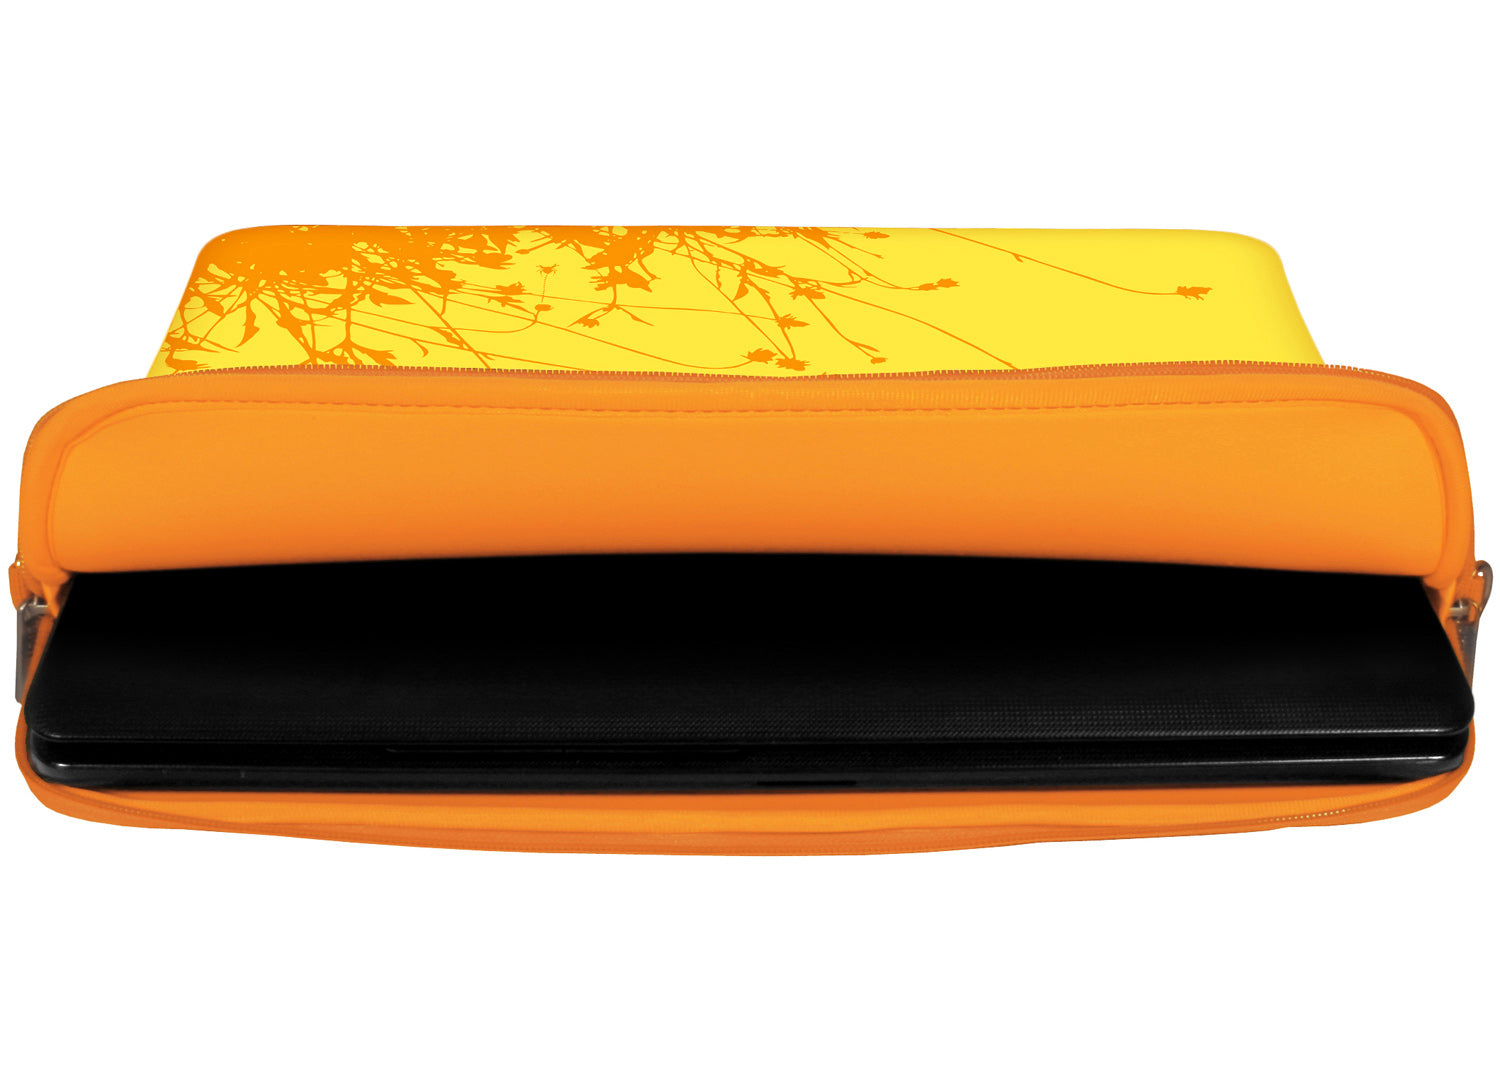 Innenansicht mit Schutzlippen der LS114 Summer Designer Laptop Tasche in orange aus wasserabweisendem Neopren